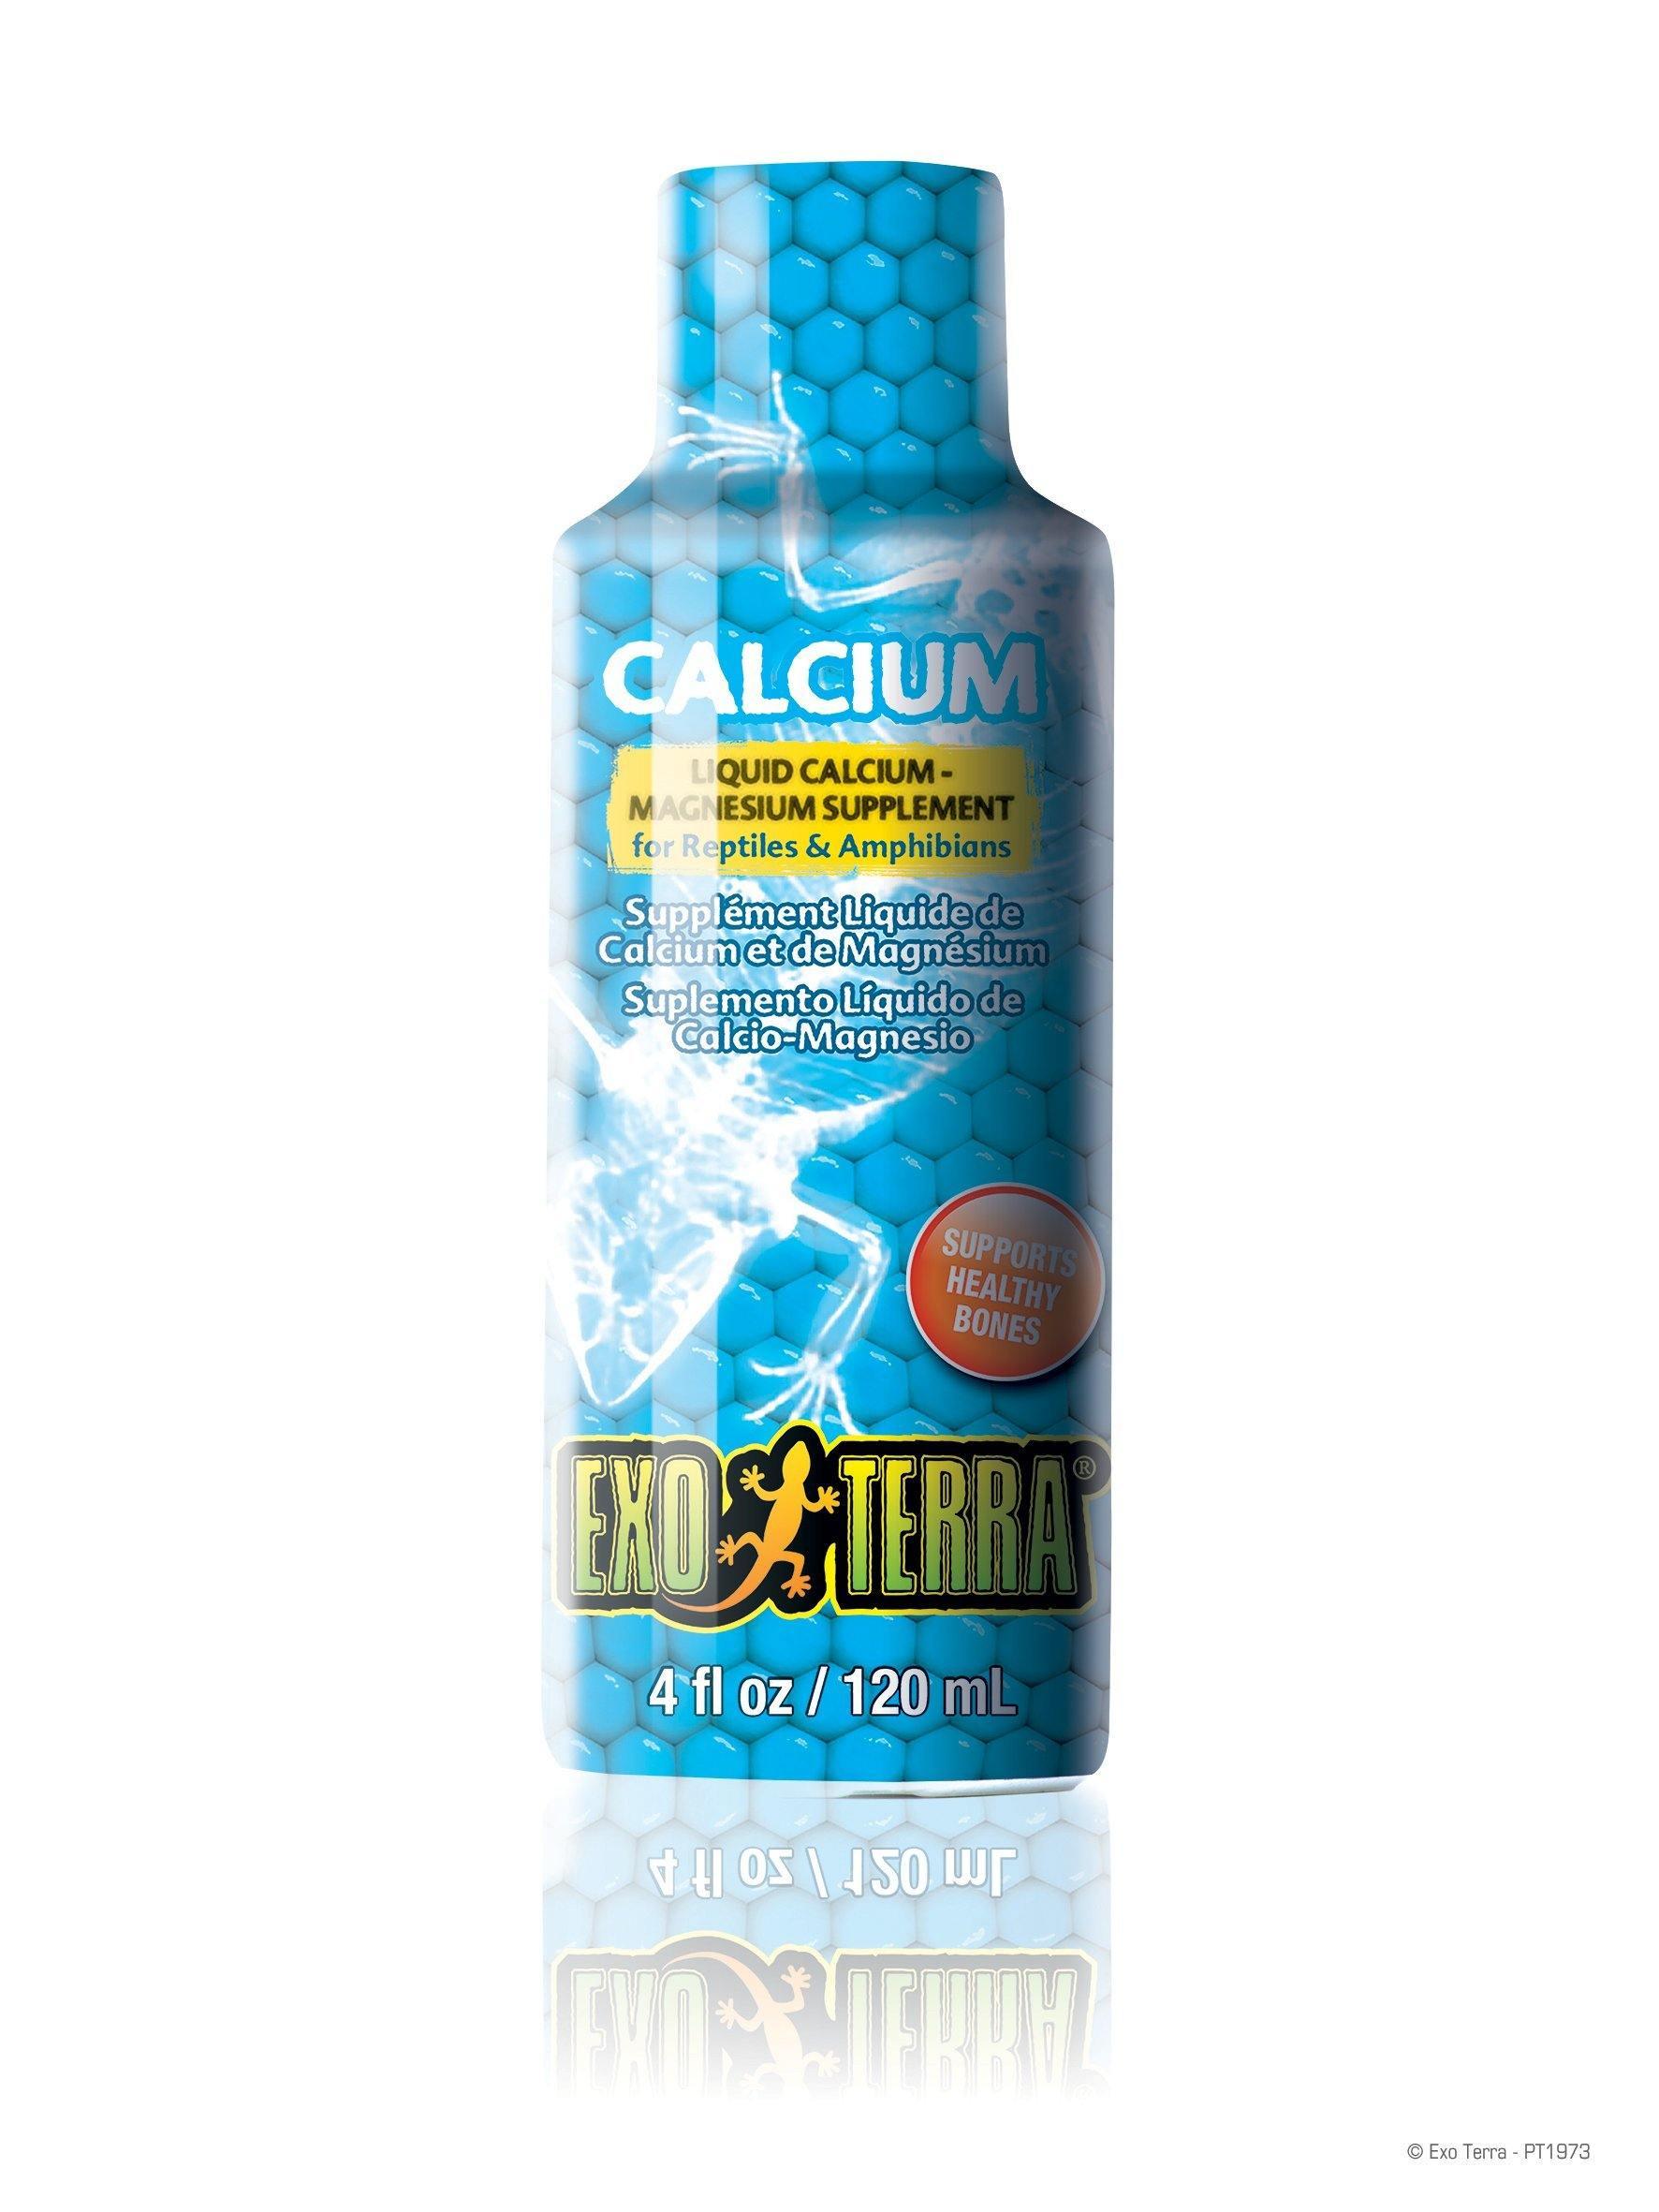 Exo Terra Liquid Calcium-Magnesium Supplement - Amazing Amazon